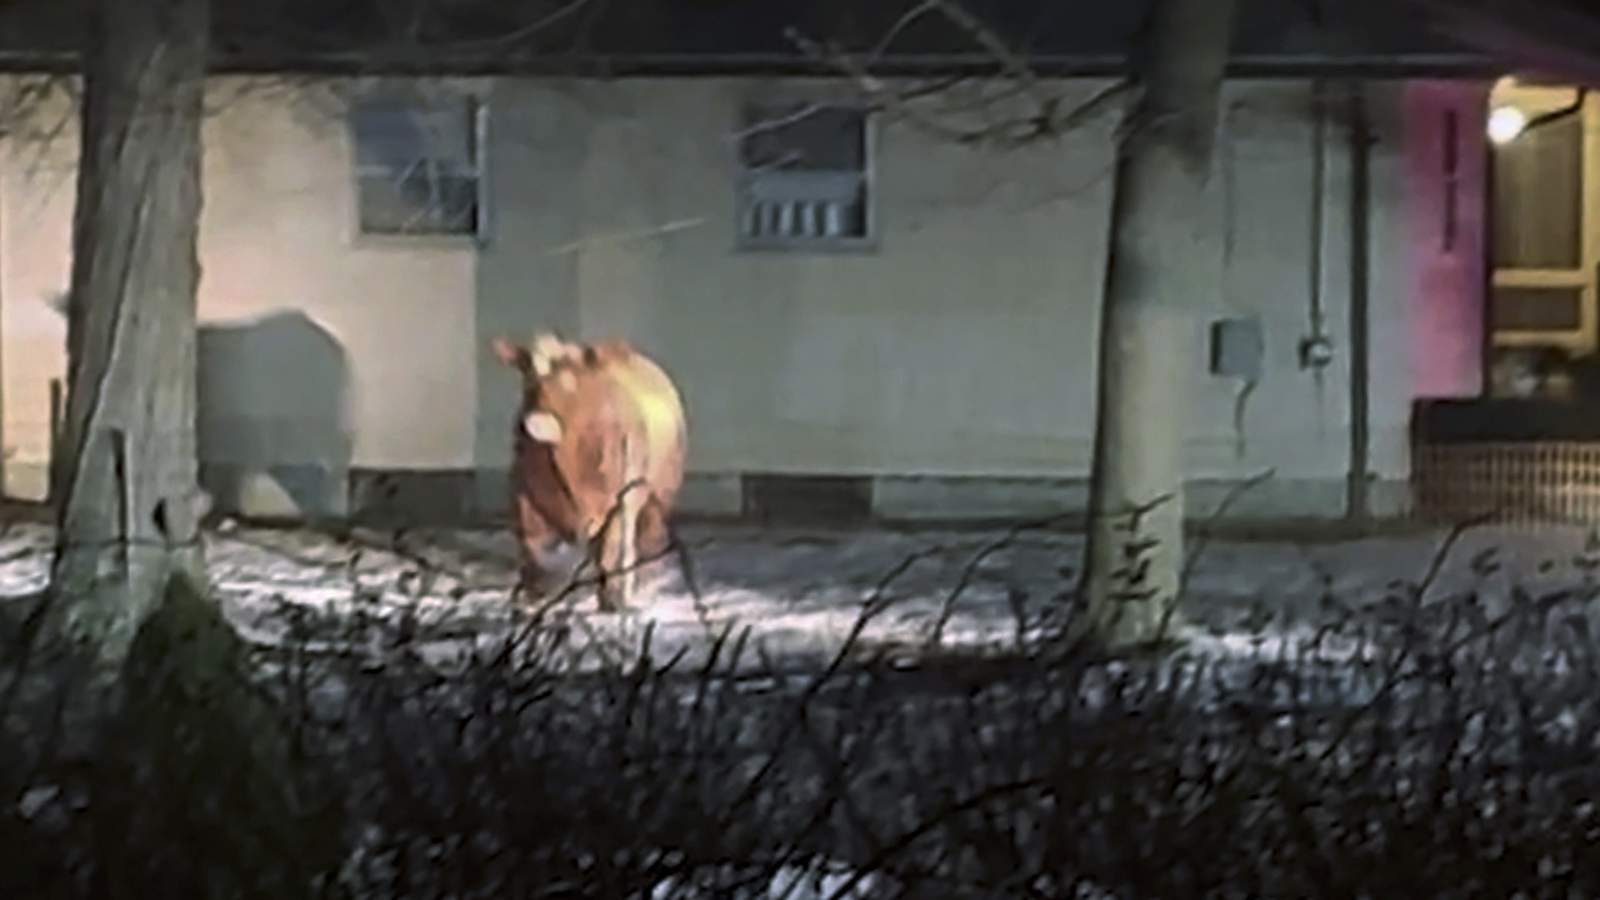 Steak-out: Rhode Island's runaway steer has been recaptured